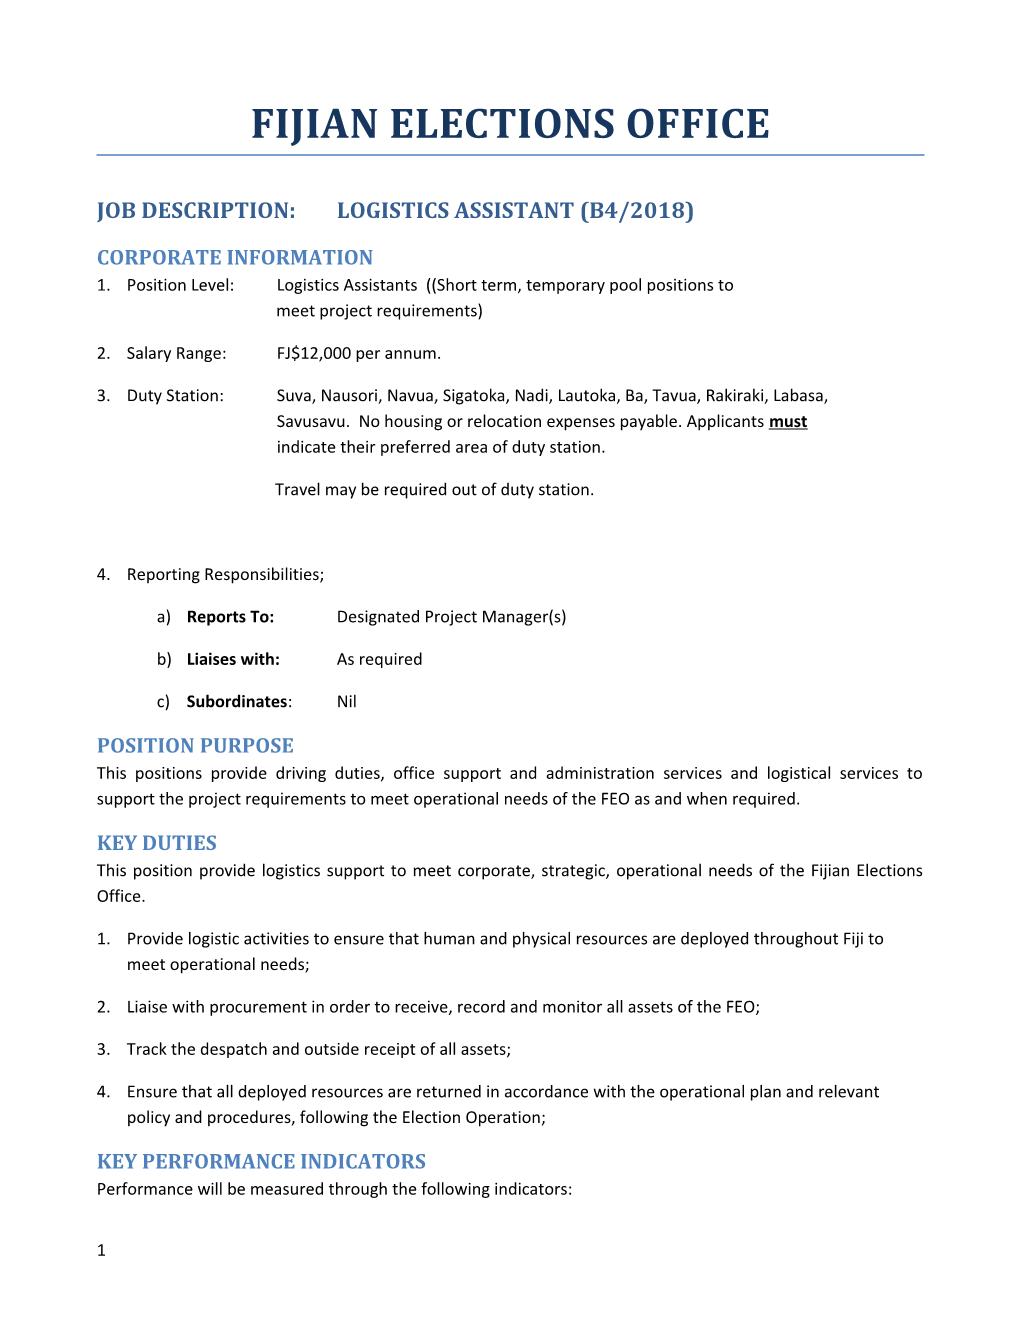 Job Description:Logistics Assistant (B4/2018)